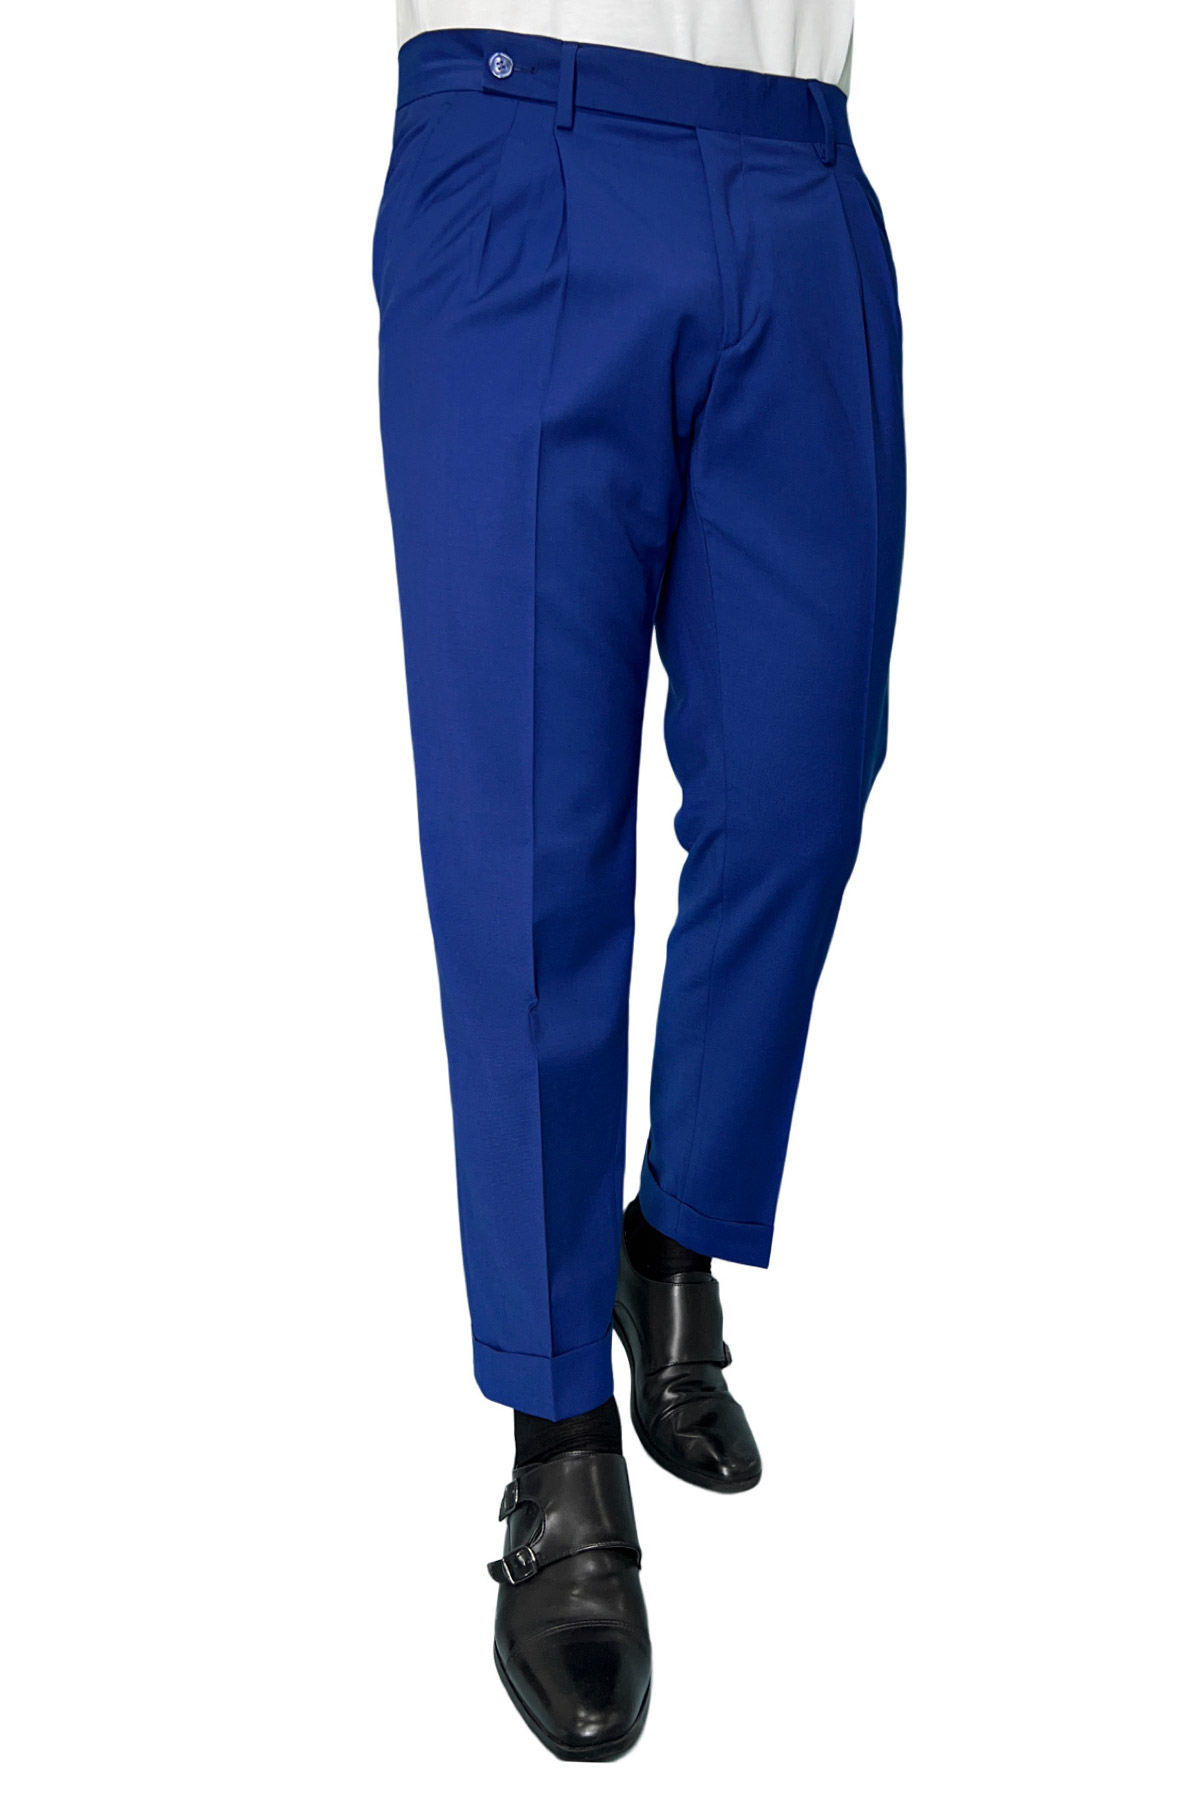 Abito uomo Doppiopetto Royal blu fresco lana elasticizzata Rever a lancia con pantalone con le pinces